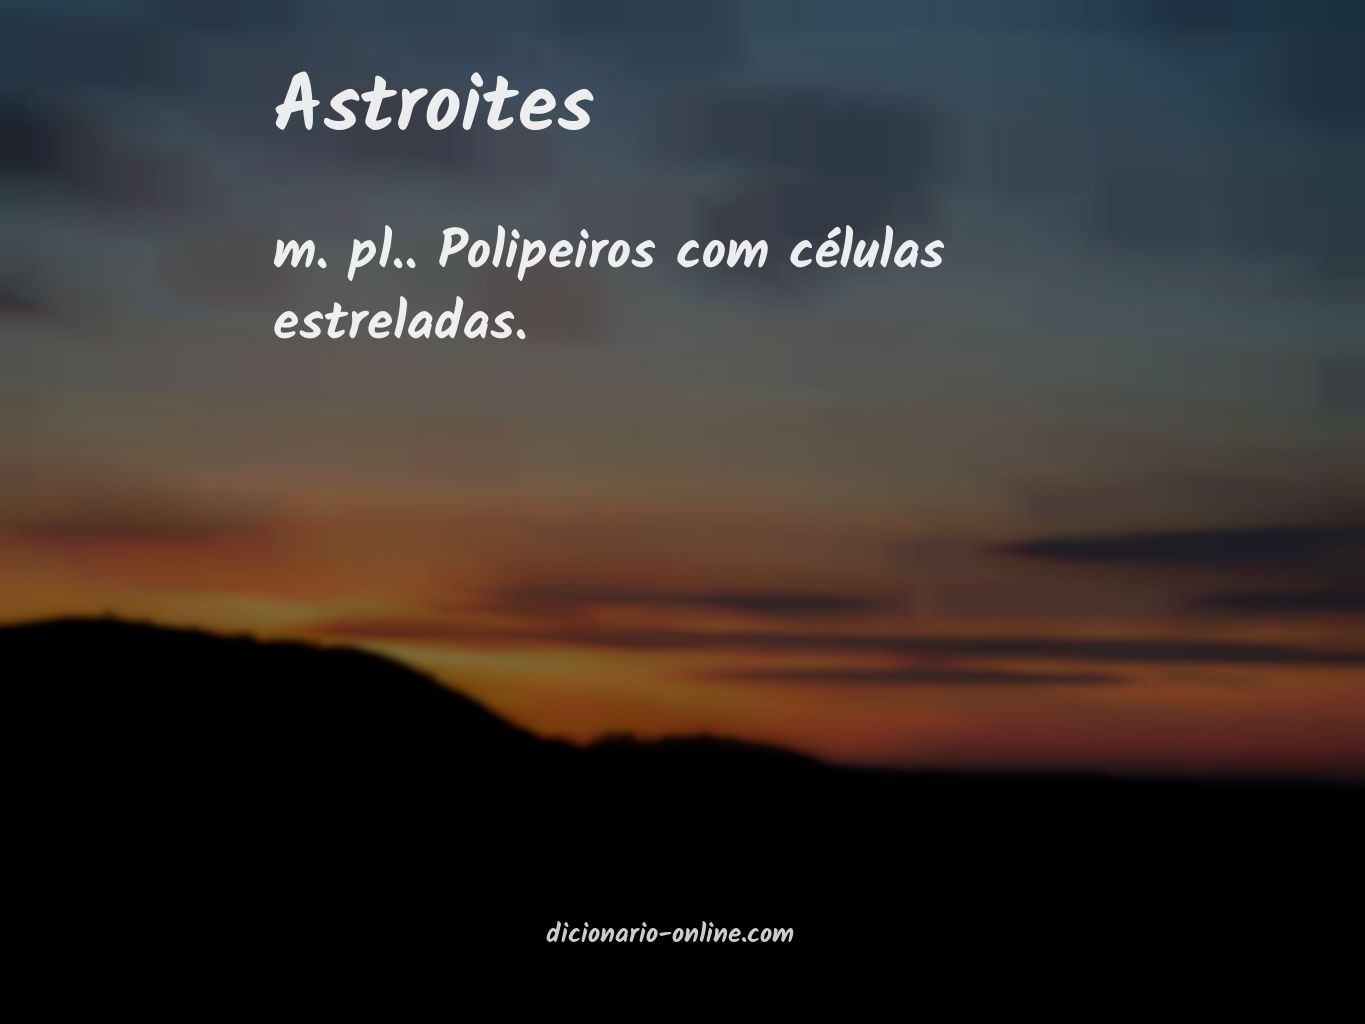 Significado de astroites